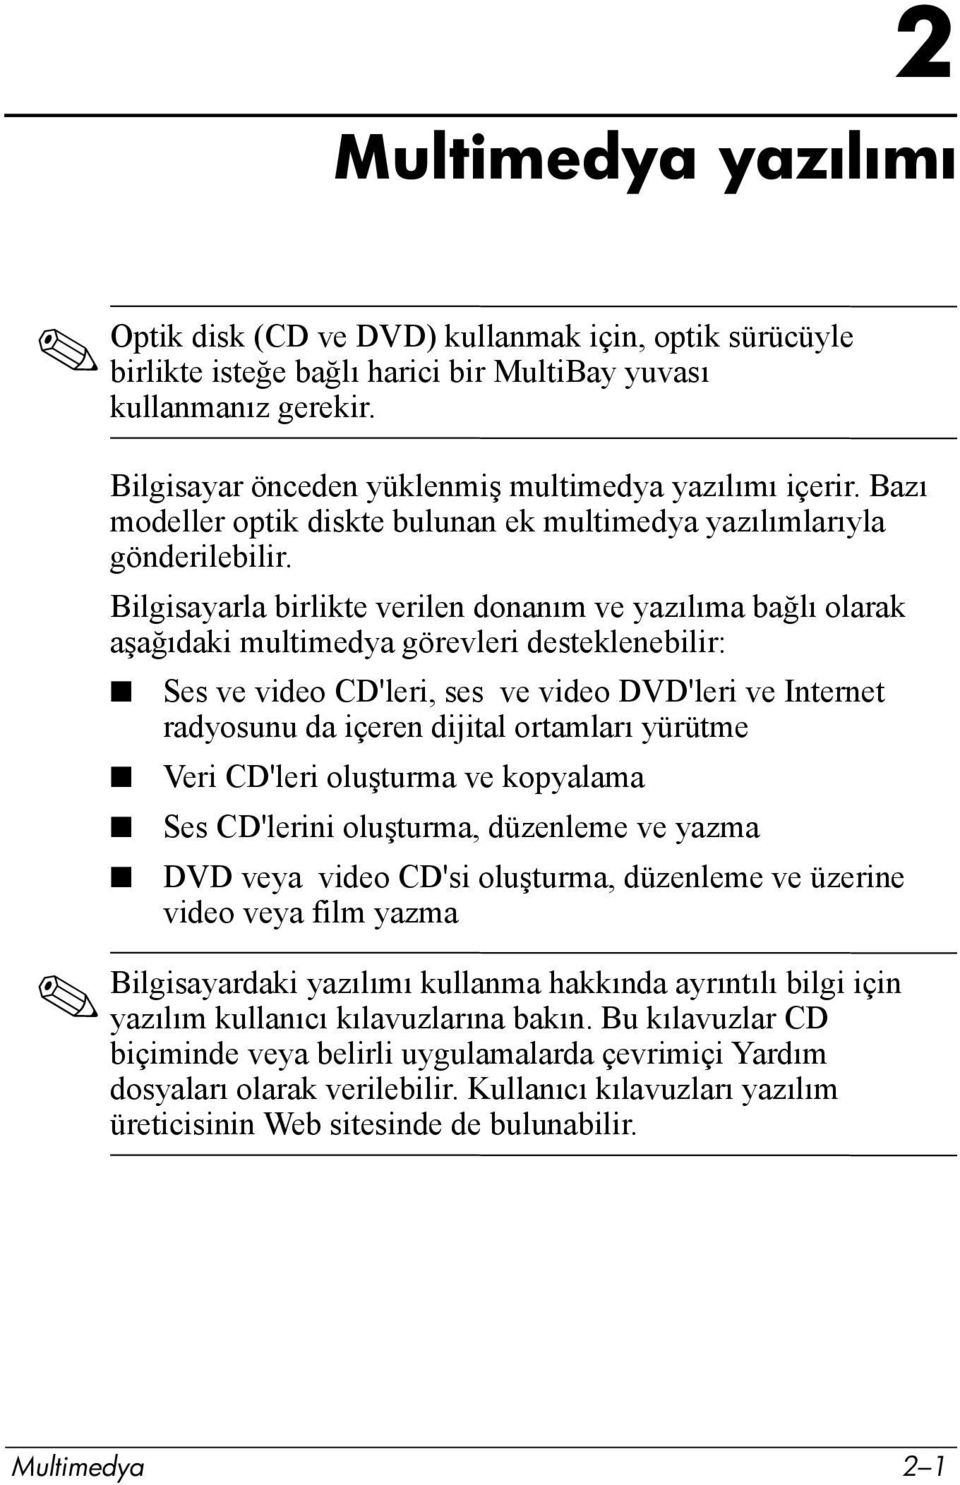 Bilgisayarla birlikte verilen donanõm ve yazõlõma bağlõ olarak aşağõdaki multimedya görevleri desteklenebilir: Ses ve video CD'leri, ses ve video DVD'leri ve Internet radyosunu da içeren dijital